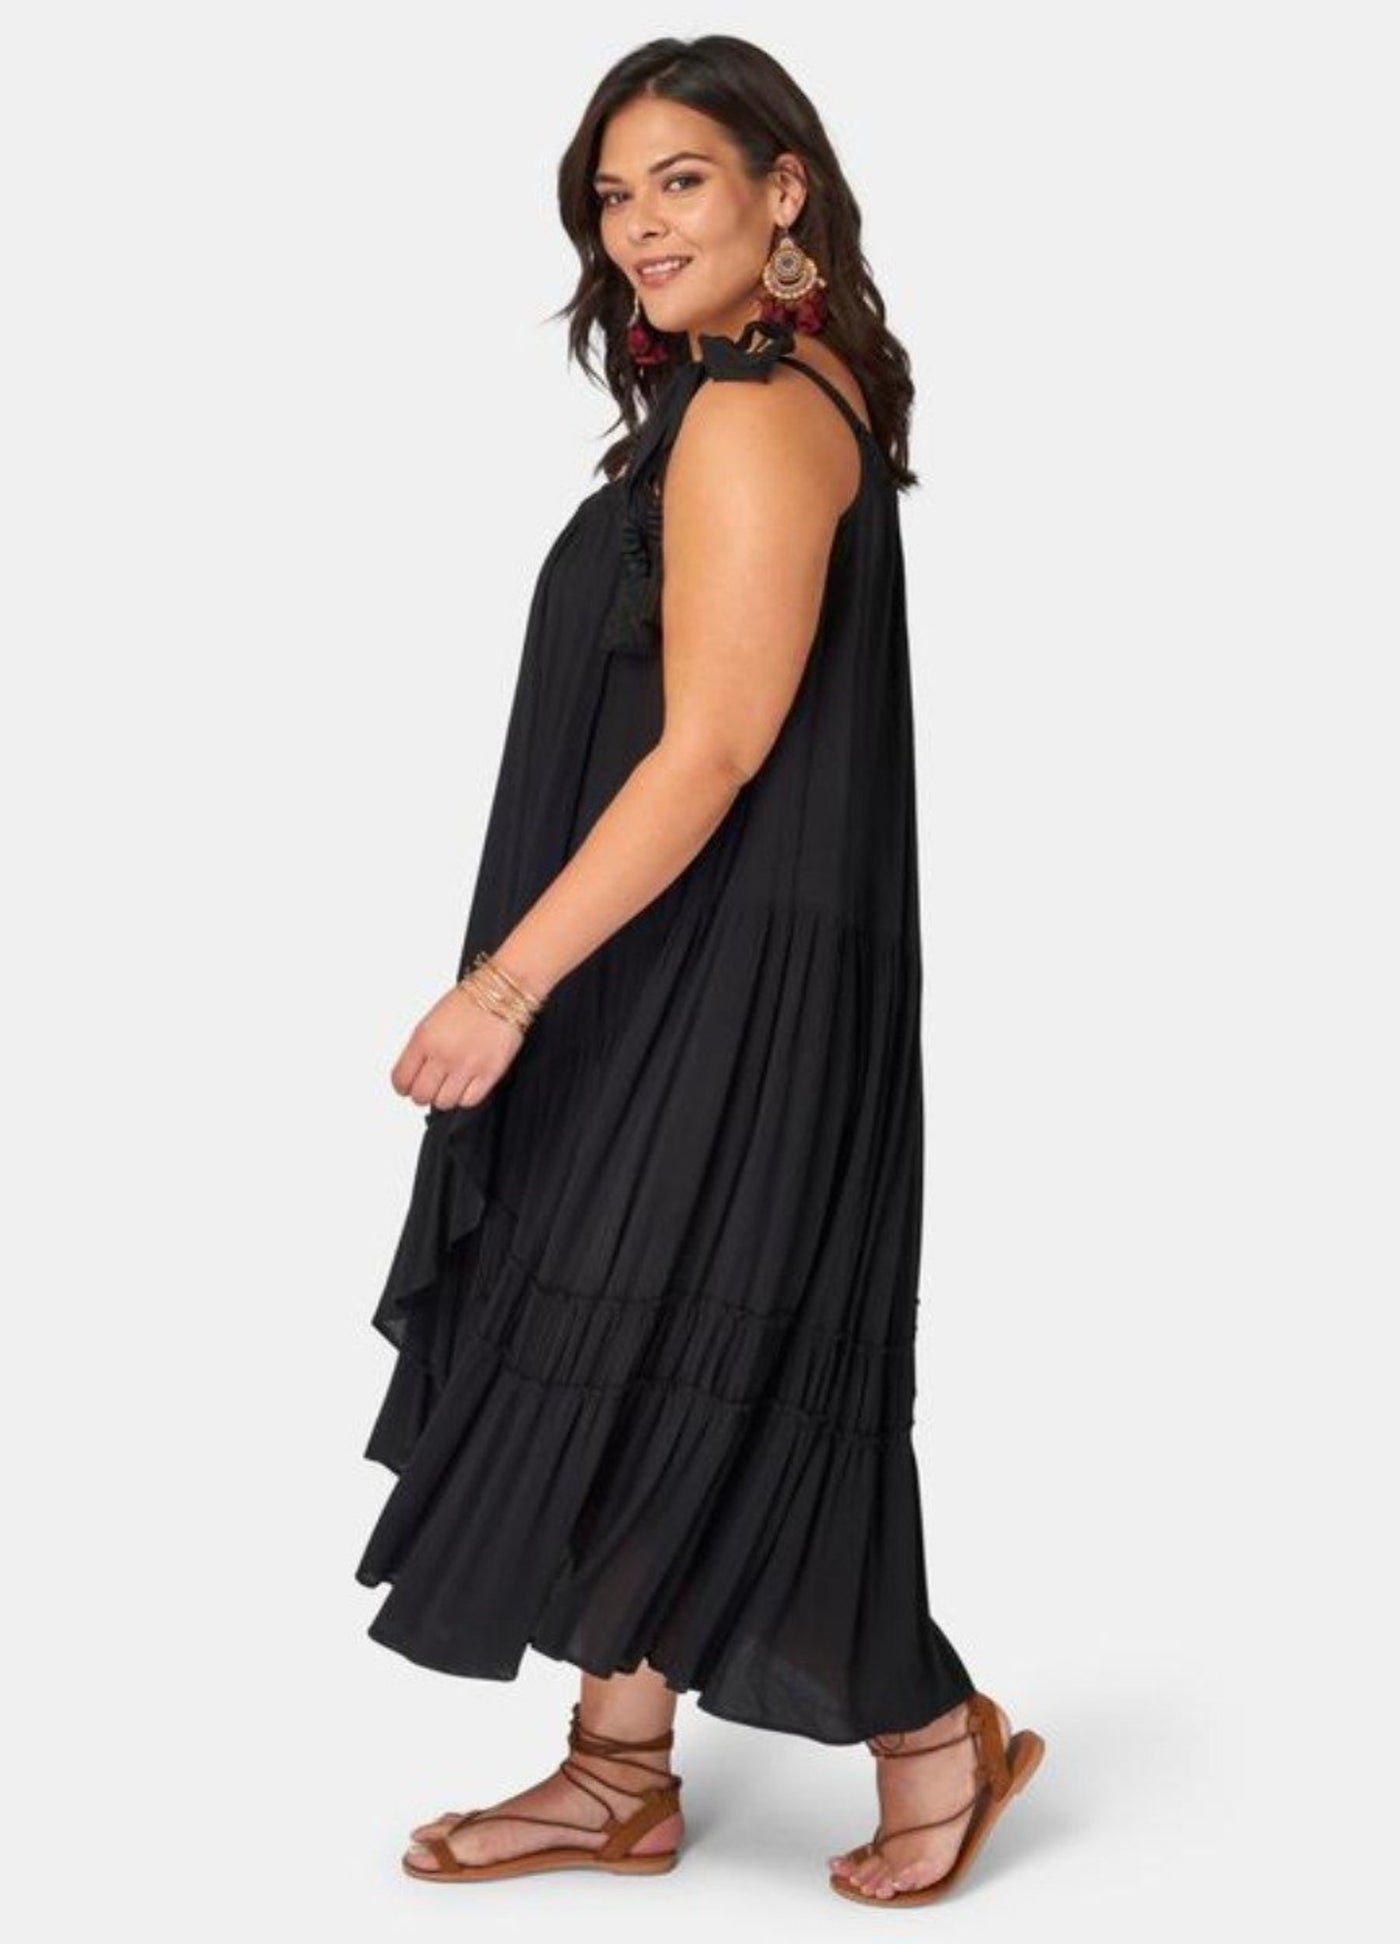 Brunette model wearing black maxi dress